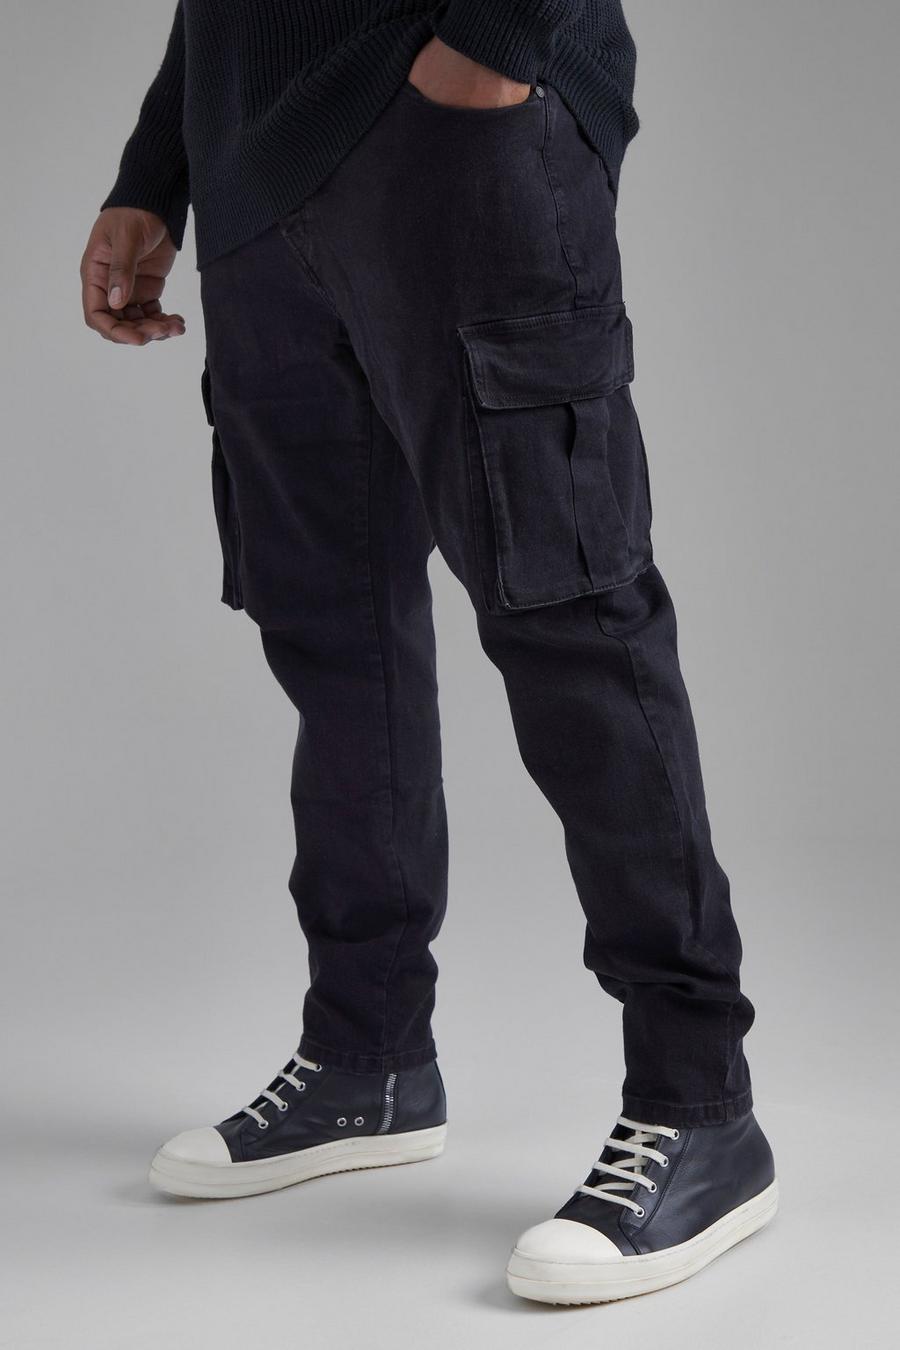 שחור דהוי ג'ינס סקיני דגמ"ח נמתח, מידות גדולות image number 1